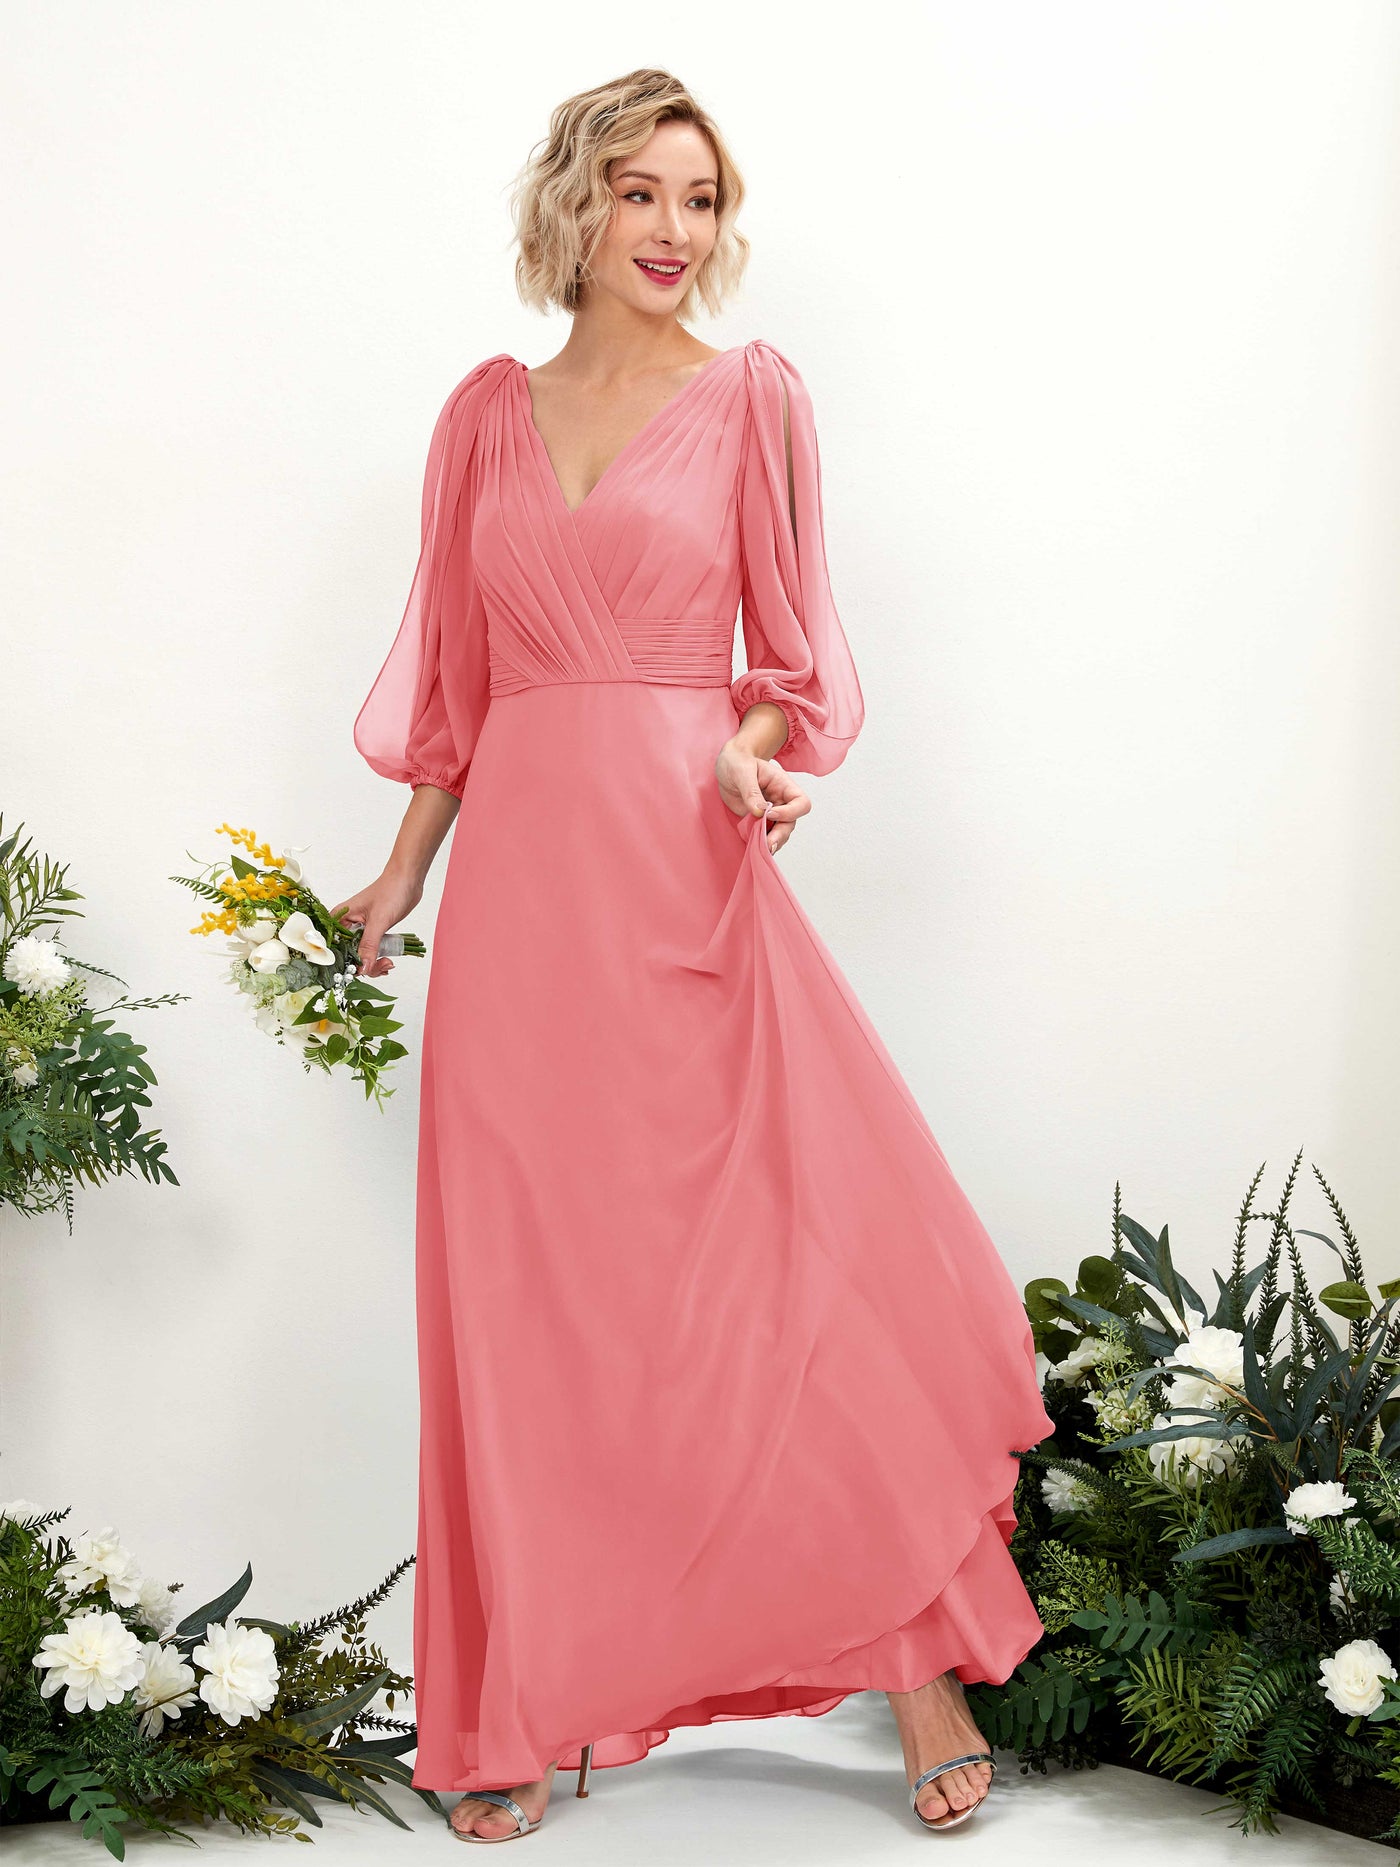 Coral Pink Bridesmaid Dresses Bridesmaid Dress Chiffon V-neck Full Length Long Sleeves Wedding Party Dress (81223530)#color_coral-pink